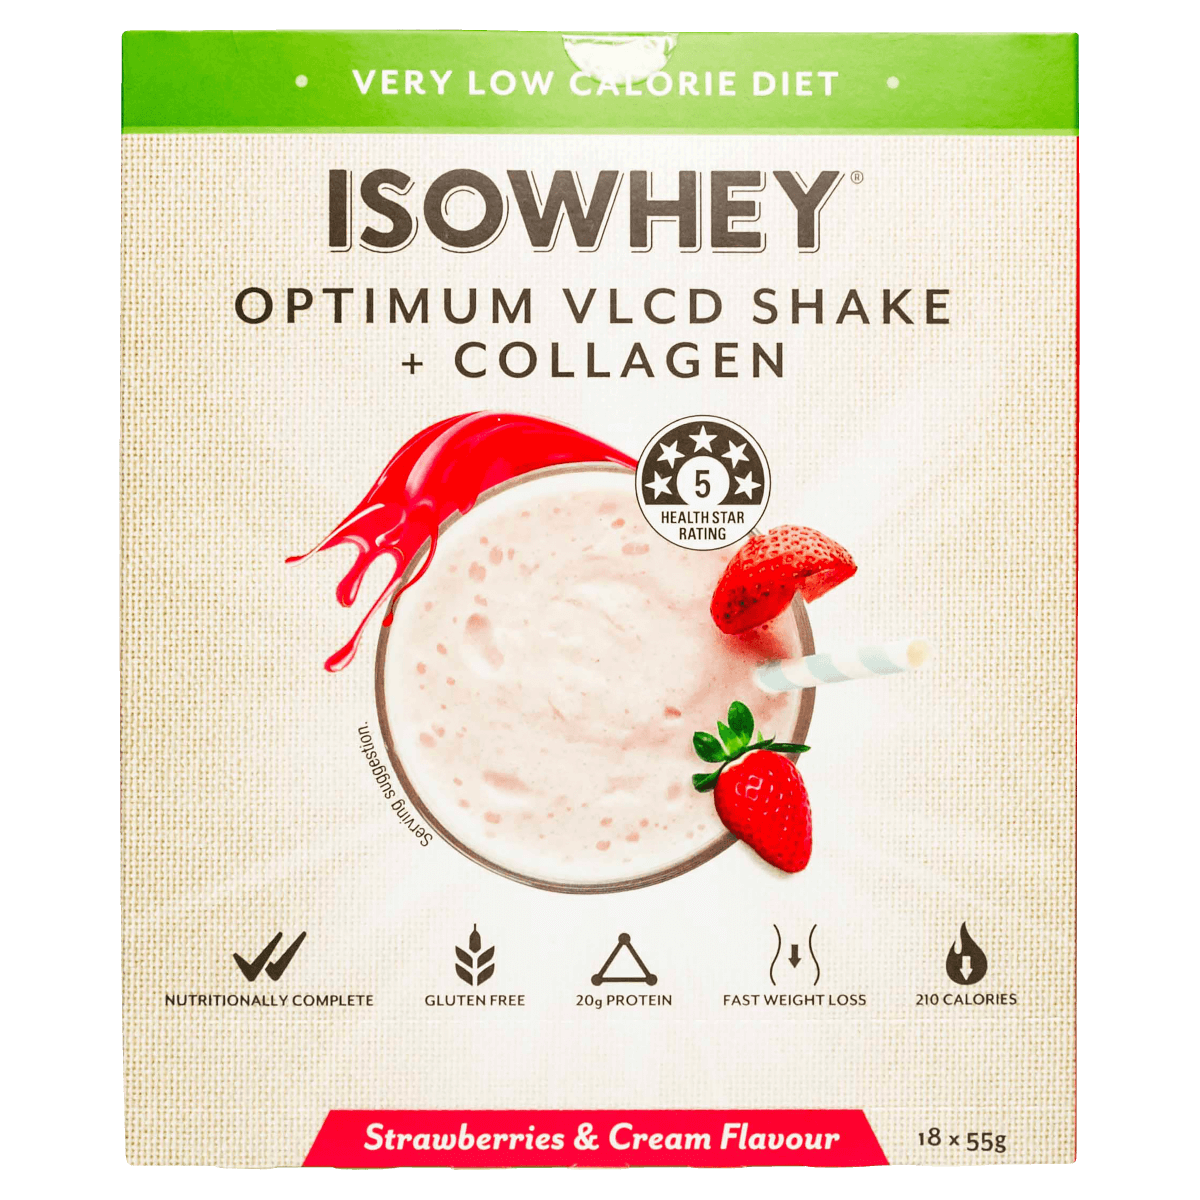 Isowhey Optimum VLCD + Collagen Shake Strawberry & Cream 18 x 55g Australia